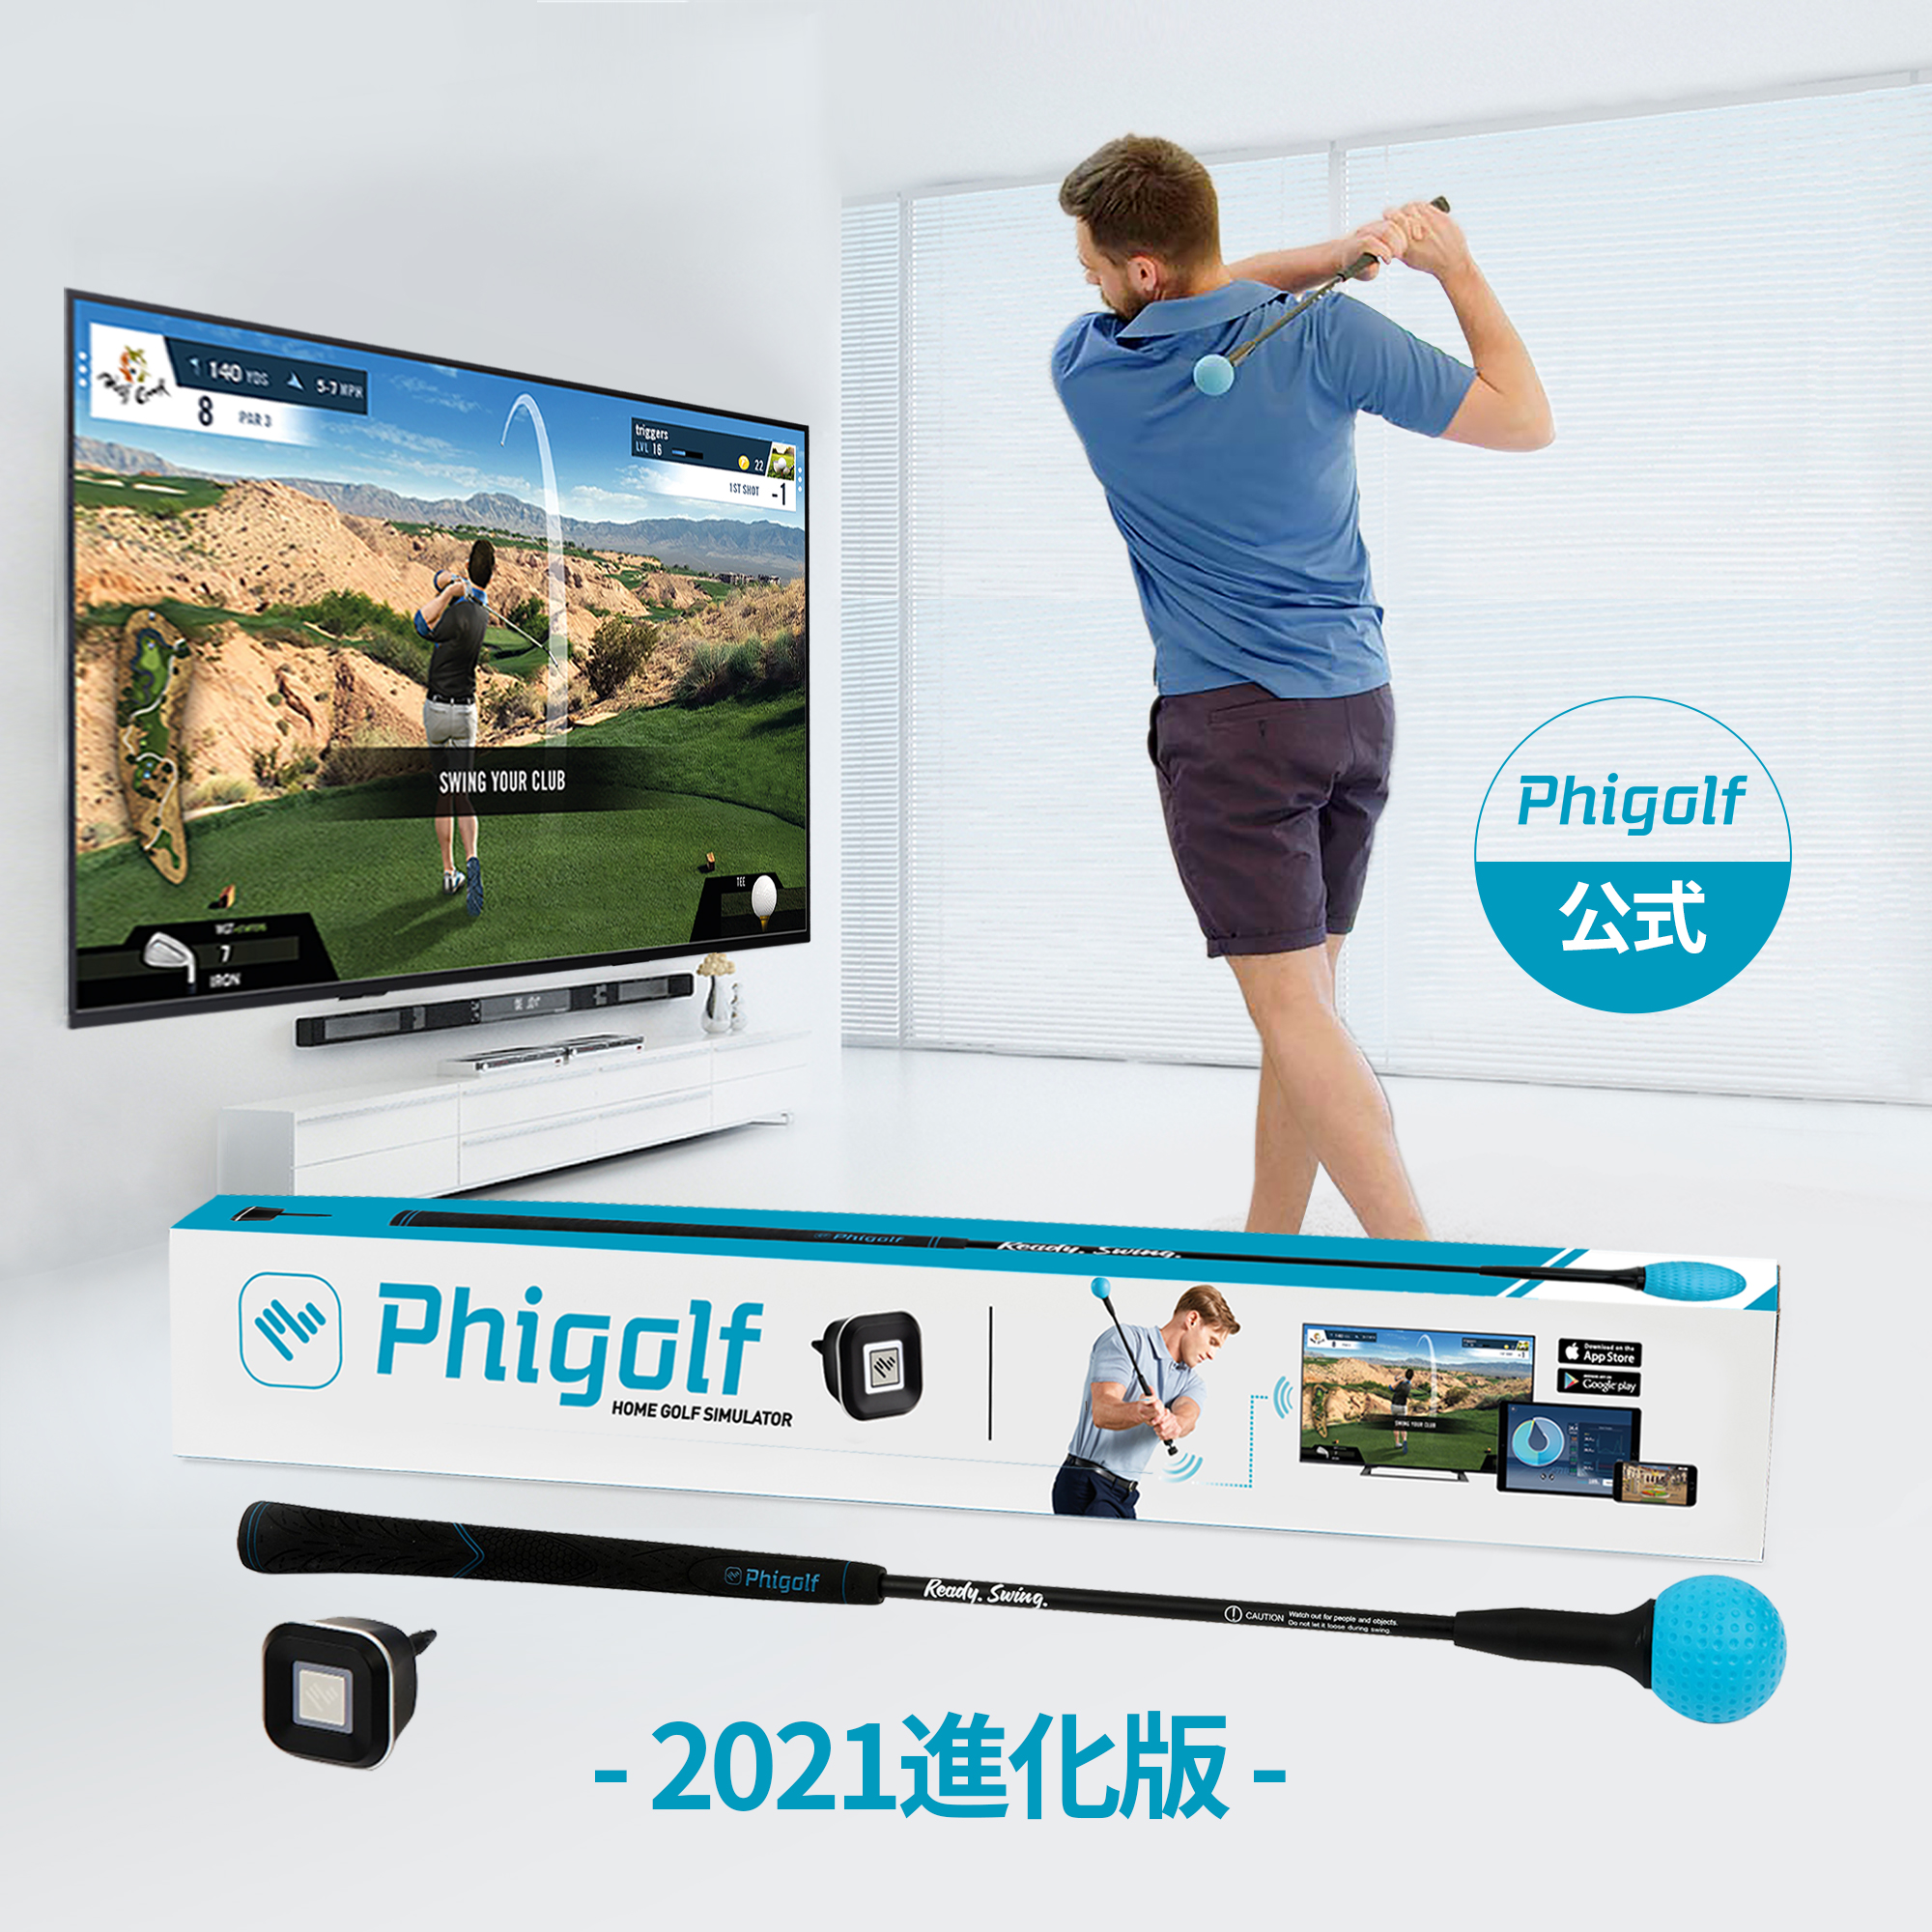 【5380円OFFクーポンあり】 Phigolf (ファイゴルフ)【2021強化版】ゴルフシュミレーター ゴルフ練習器具 シミュレーター  ヘッドスピード/飛距離測定センサー内蔵【IOS/Android/SmartTV全対応/初心者プロ/無料アプリ(Phigolf/WGT/E6 